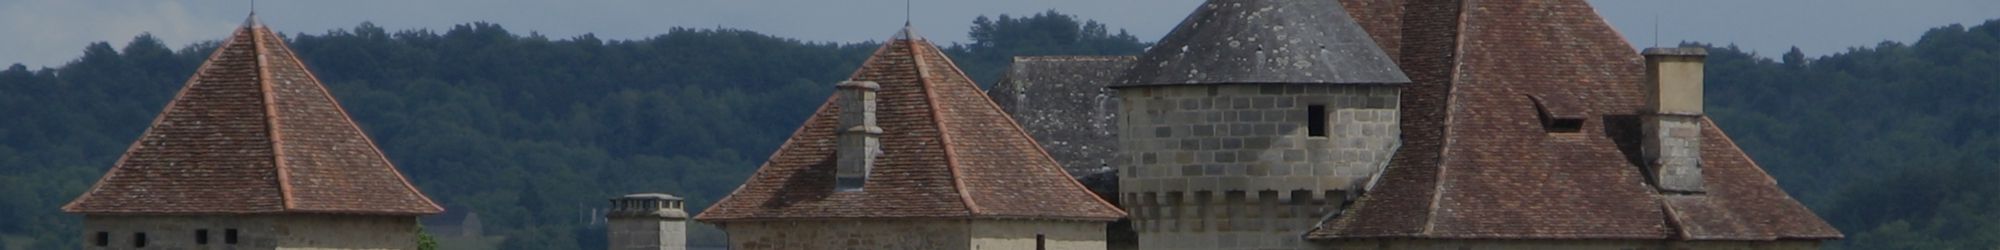 Château en Corrèze